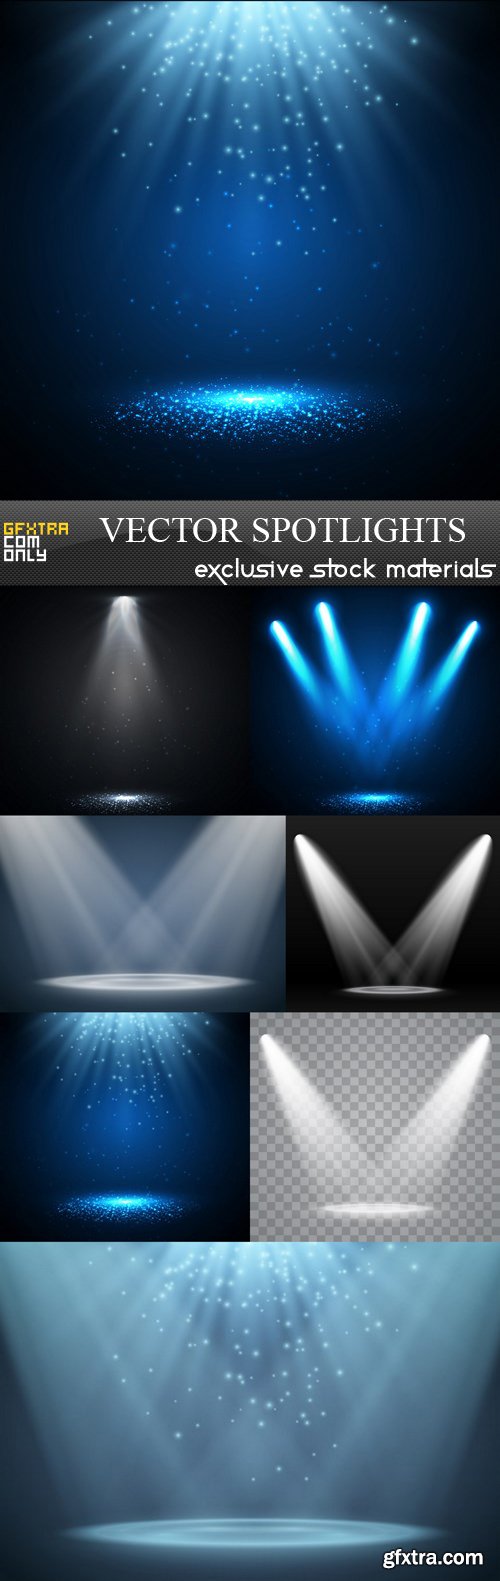 Vector Spotlights - 7 EPS